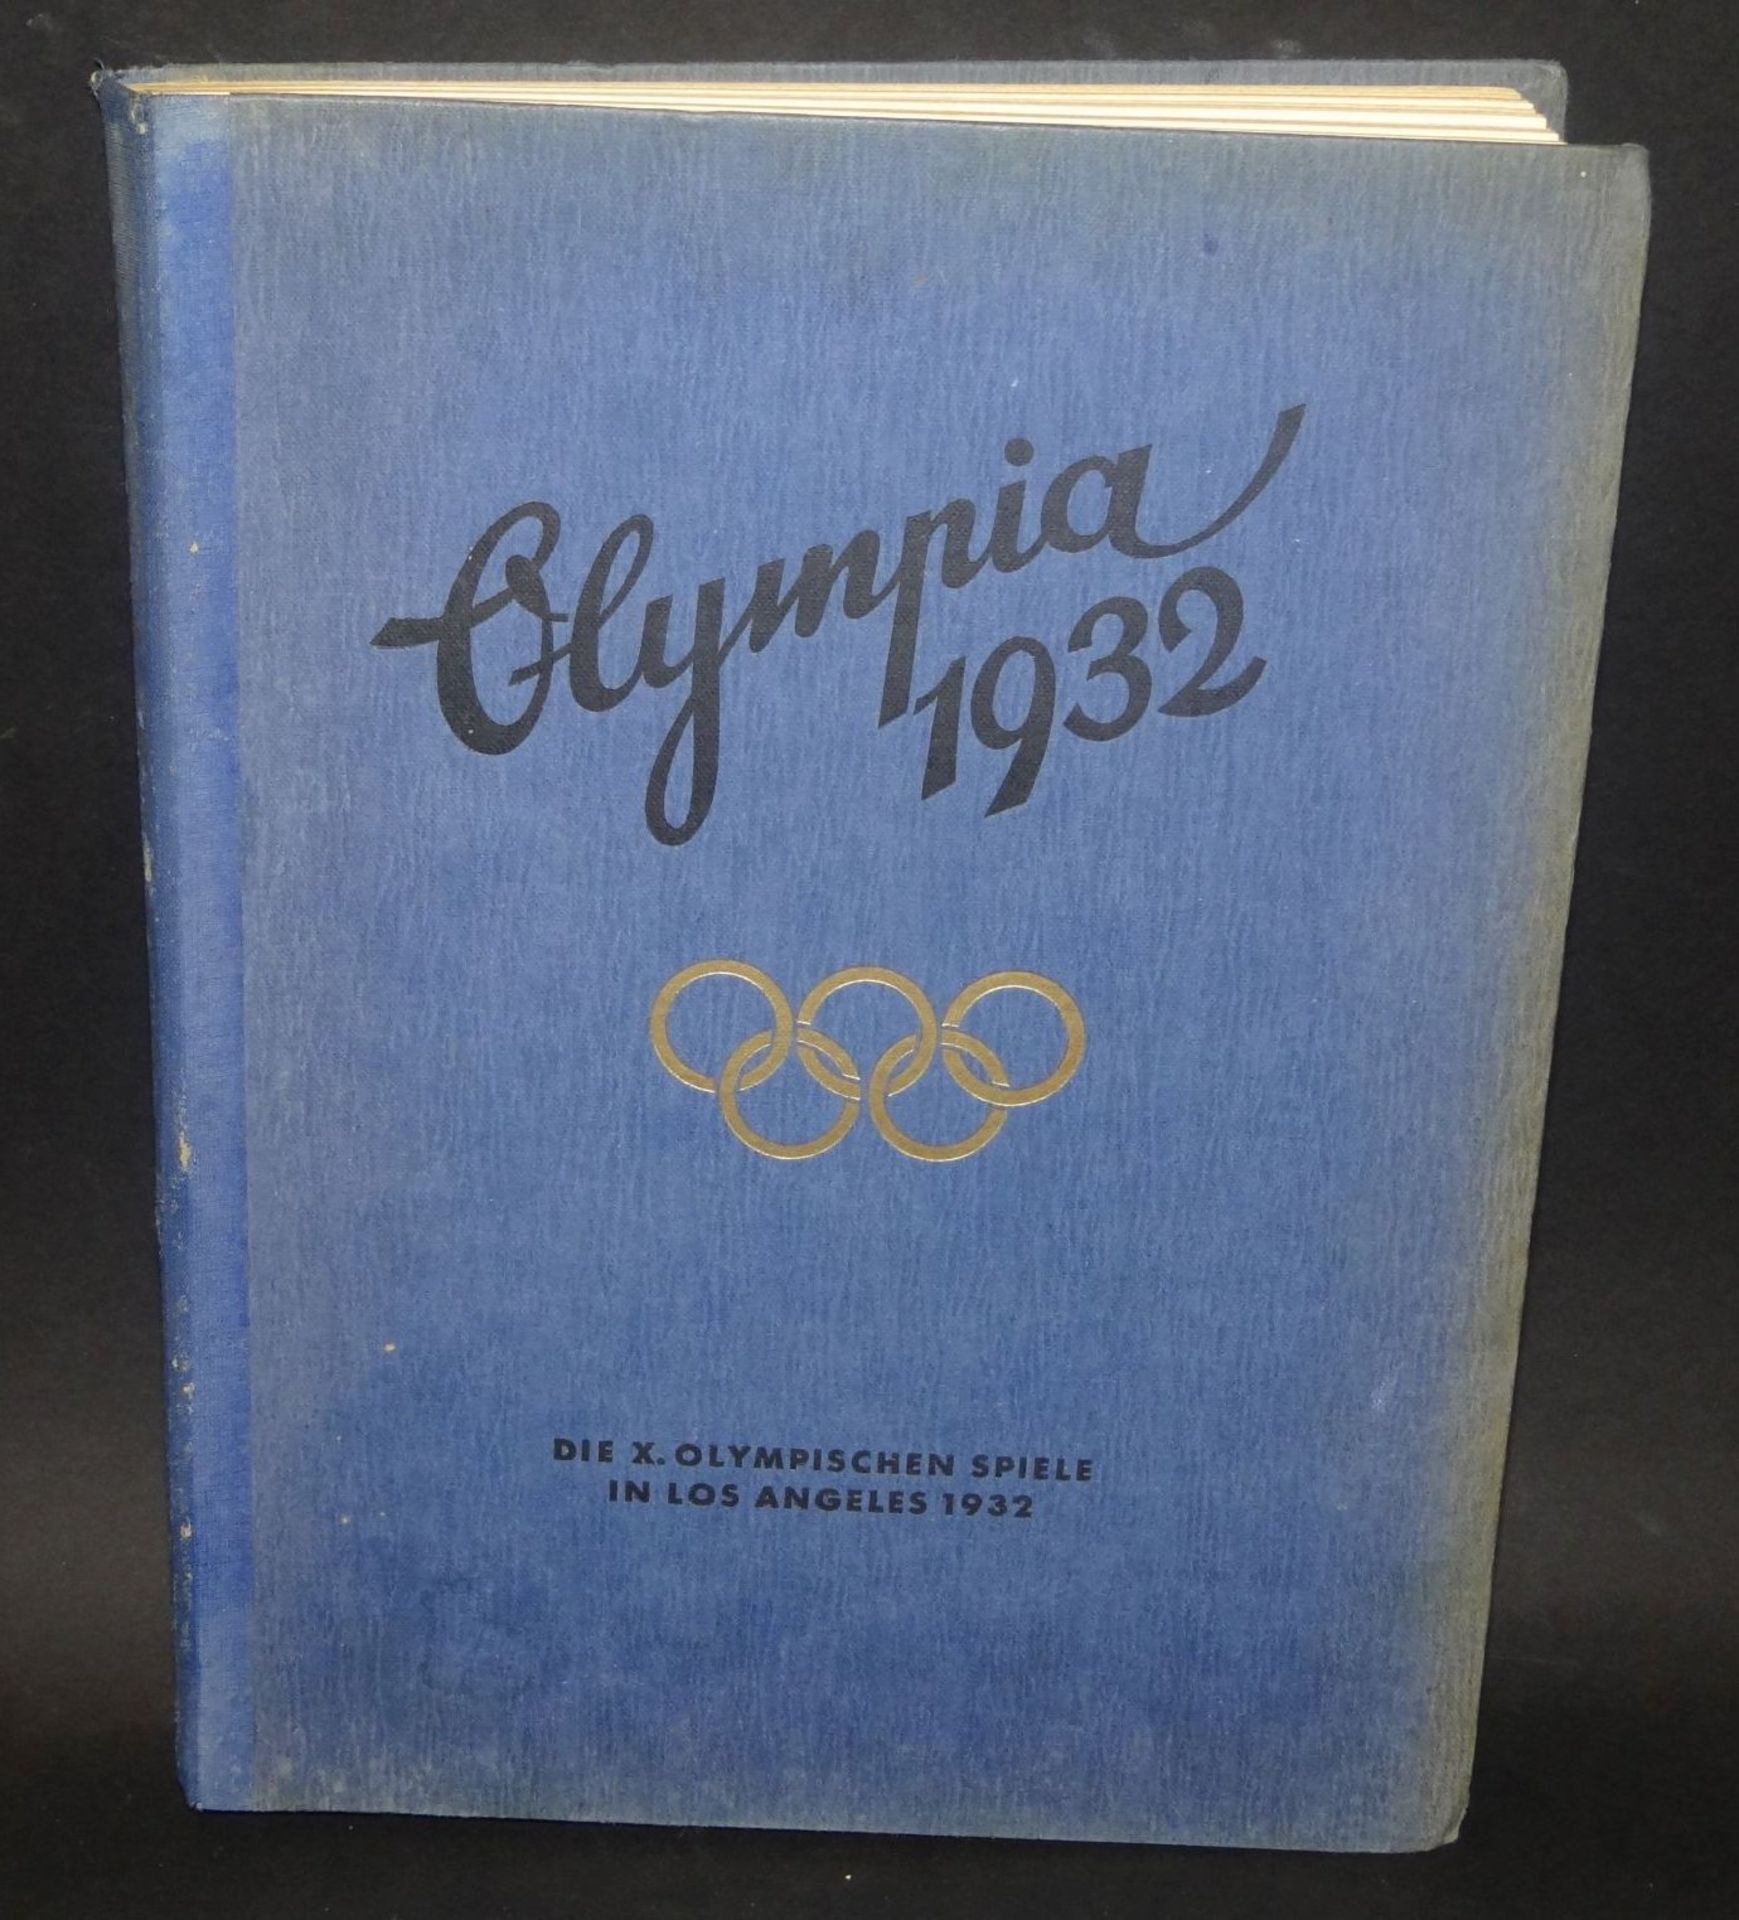 Sammelalbum "Olympia 1932", komplett